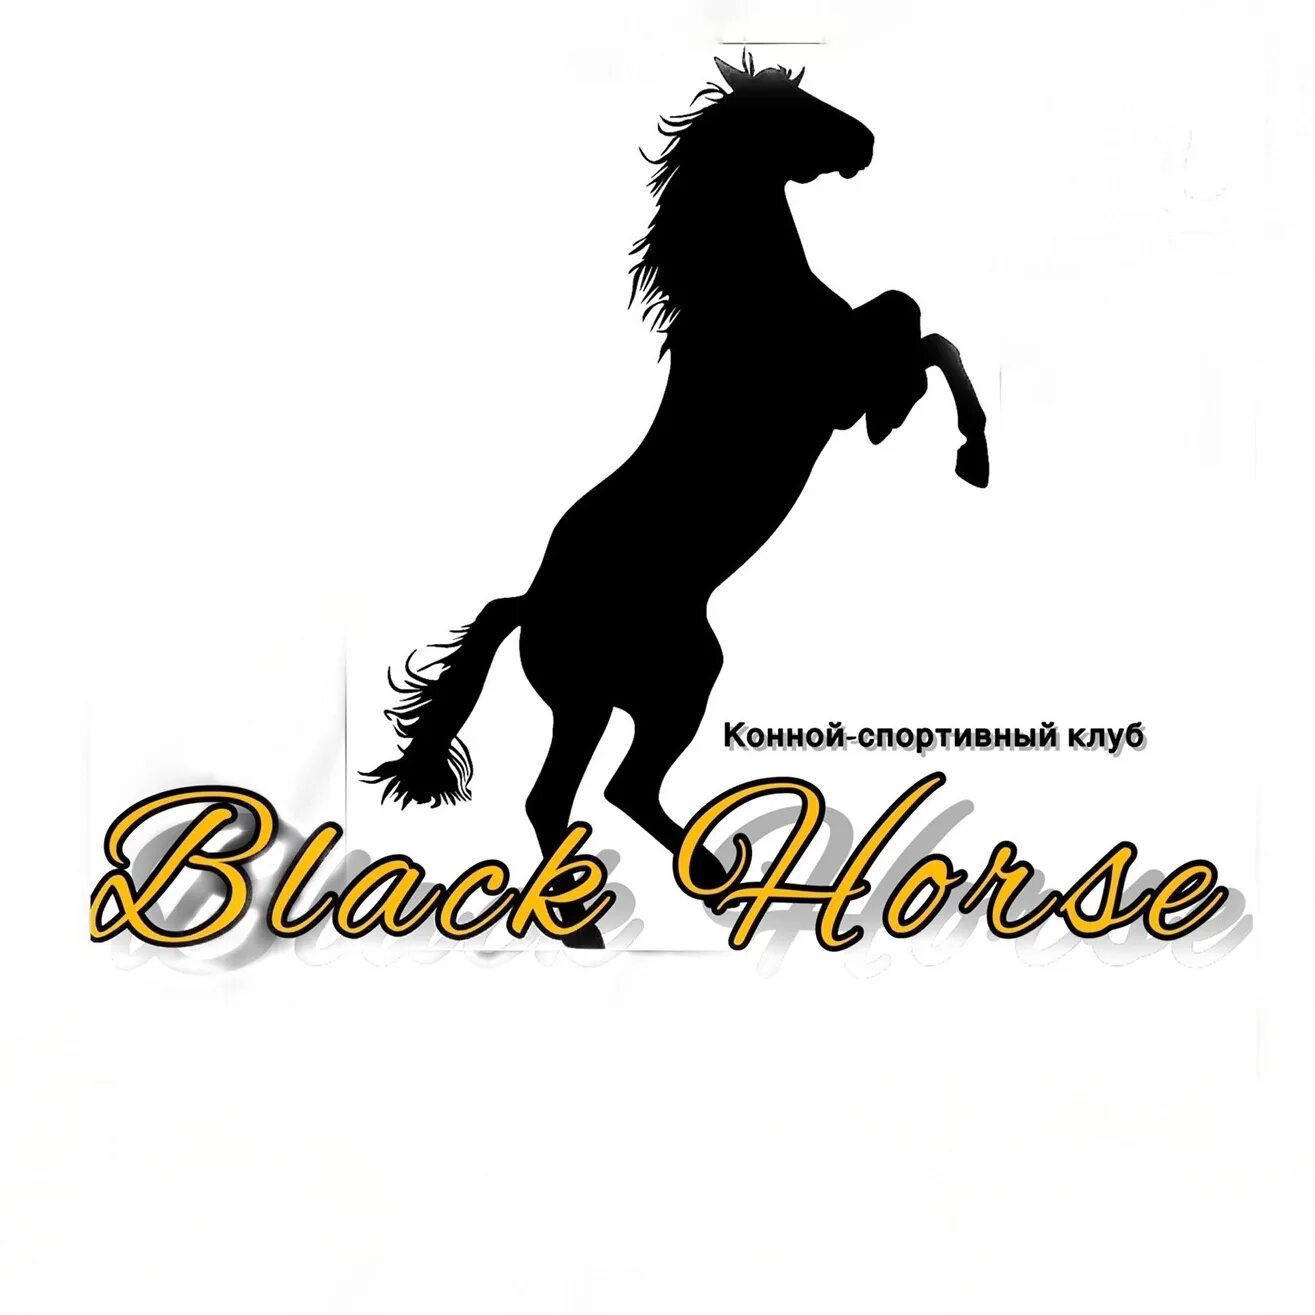 Кск хорс. КСК Блэк Хорс. Значок КСК черный. Black Horse в городе Екатеринбург логотип. Шаблон для текста красивый для текста конный спорт.